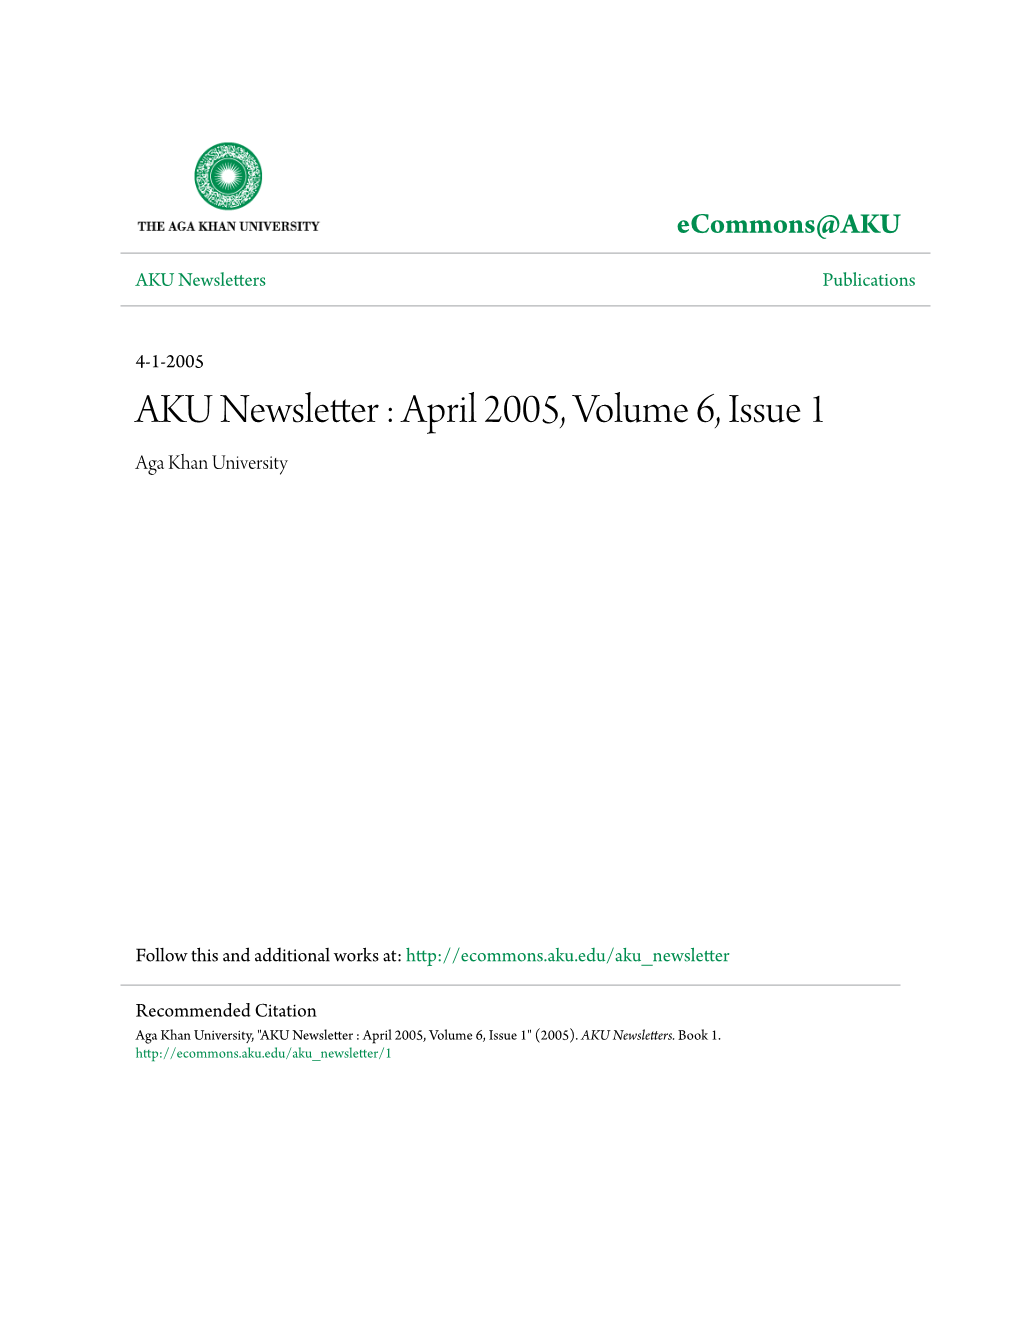 AKU Newsletter : April 2005, Volume 6, Issue 1 Aga Khan University